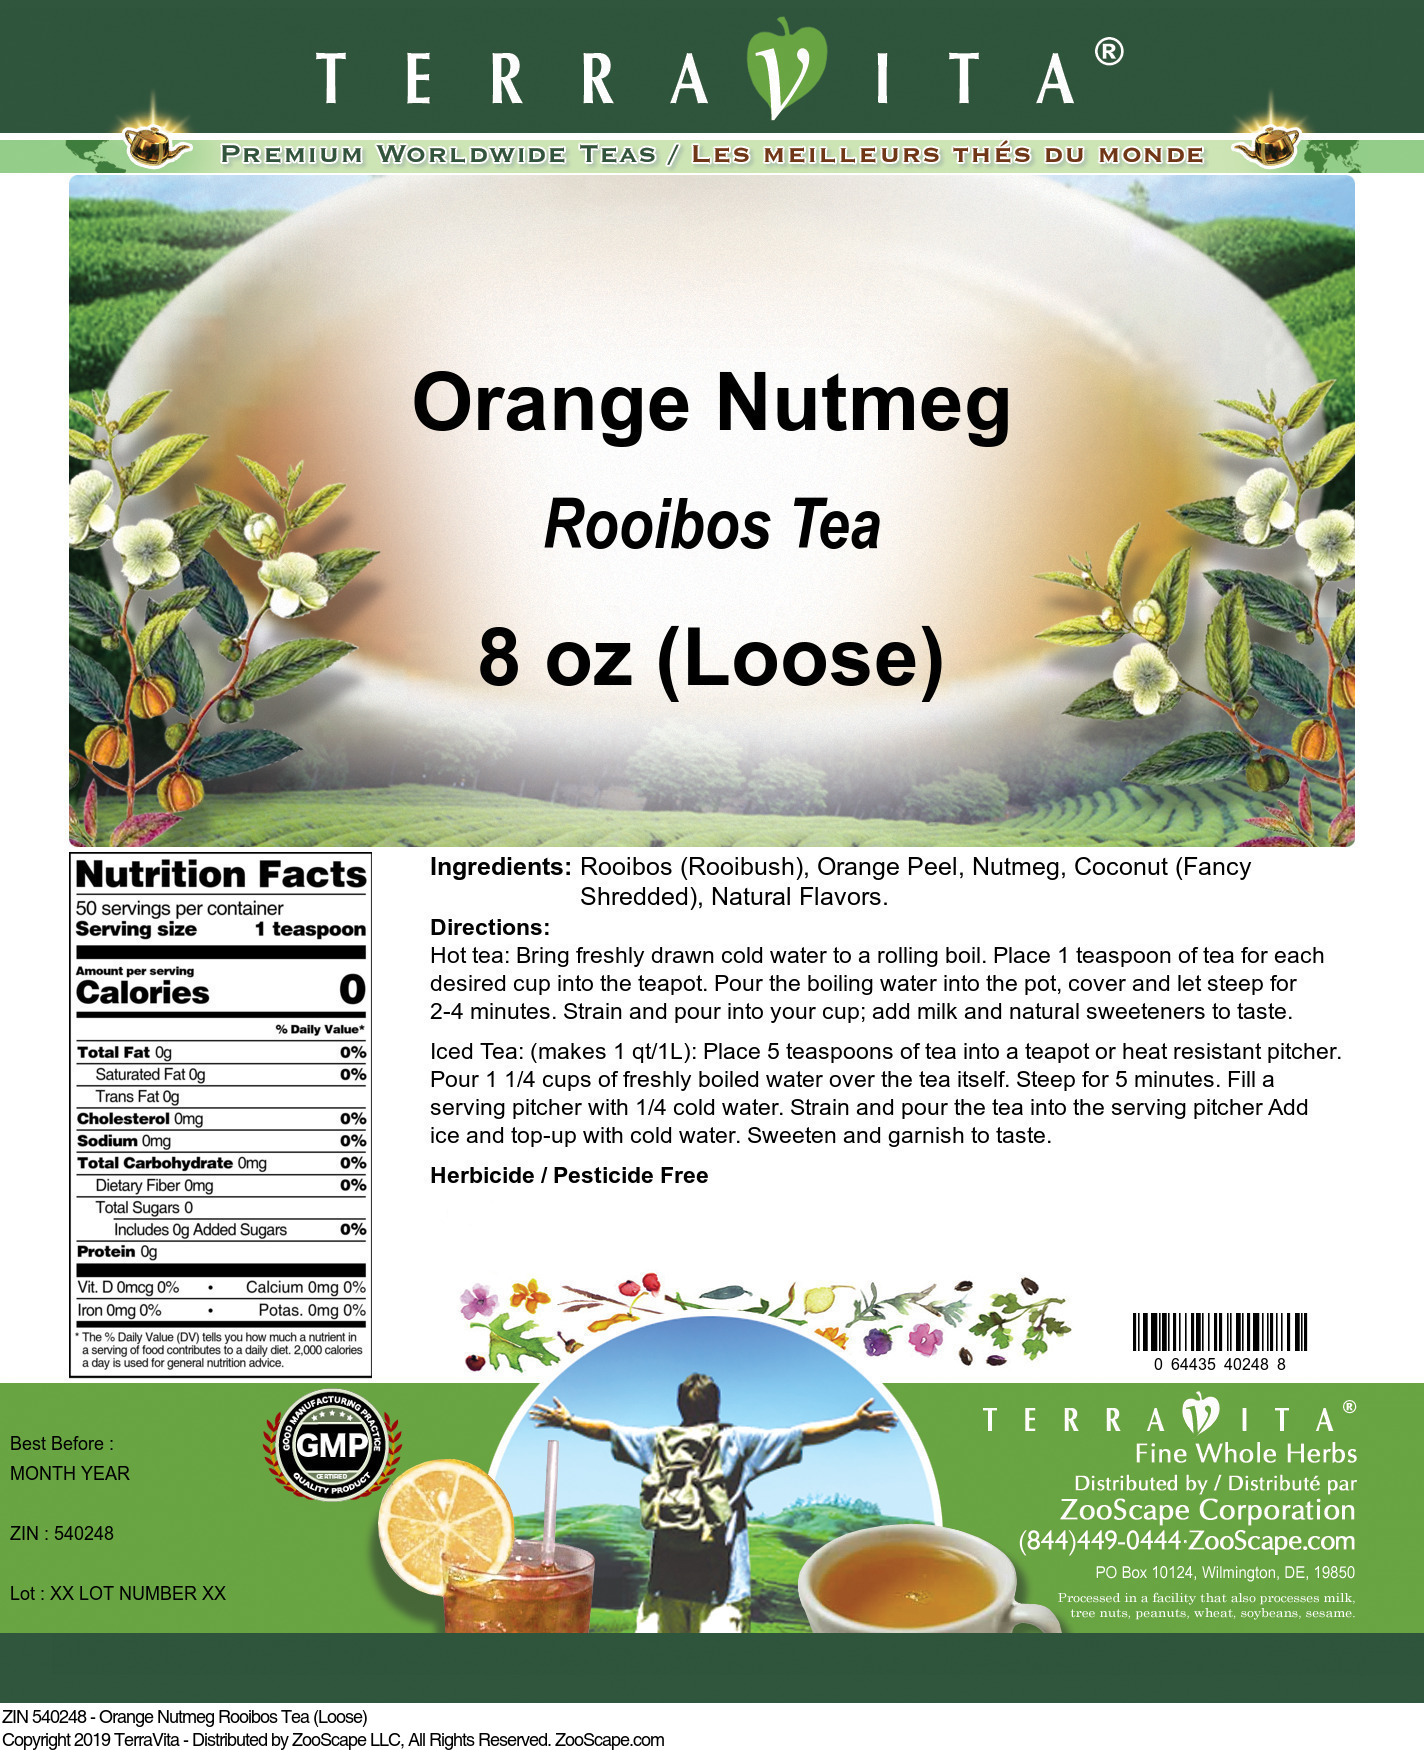 Orange Nutmeg Rooibos Tea (Loose) - Label